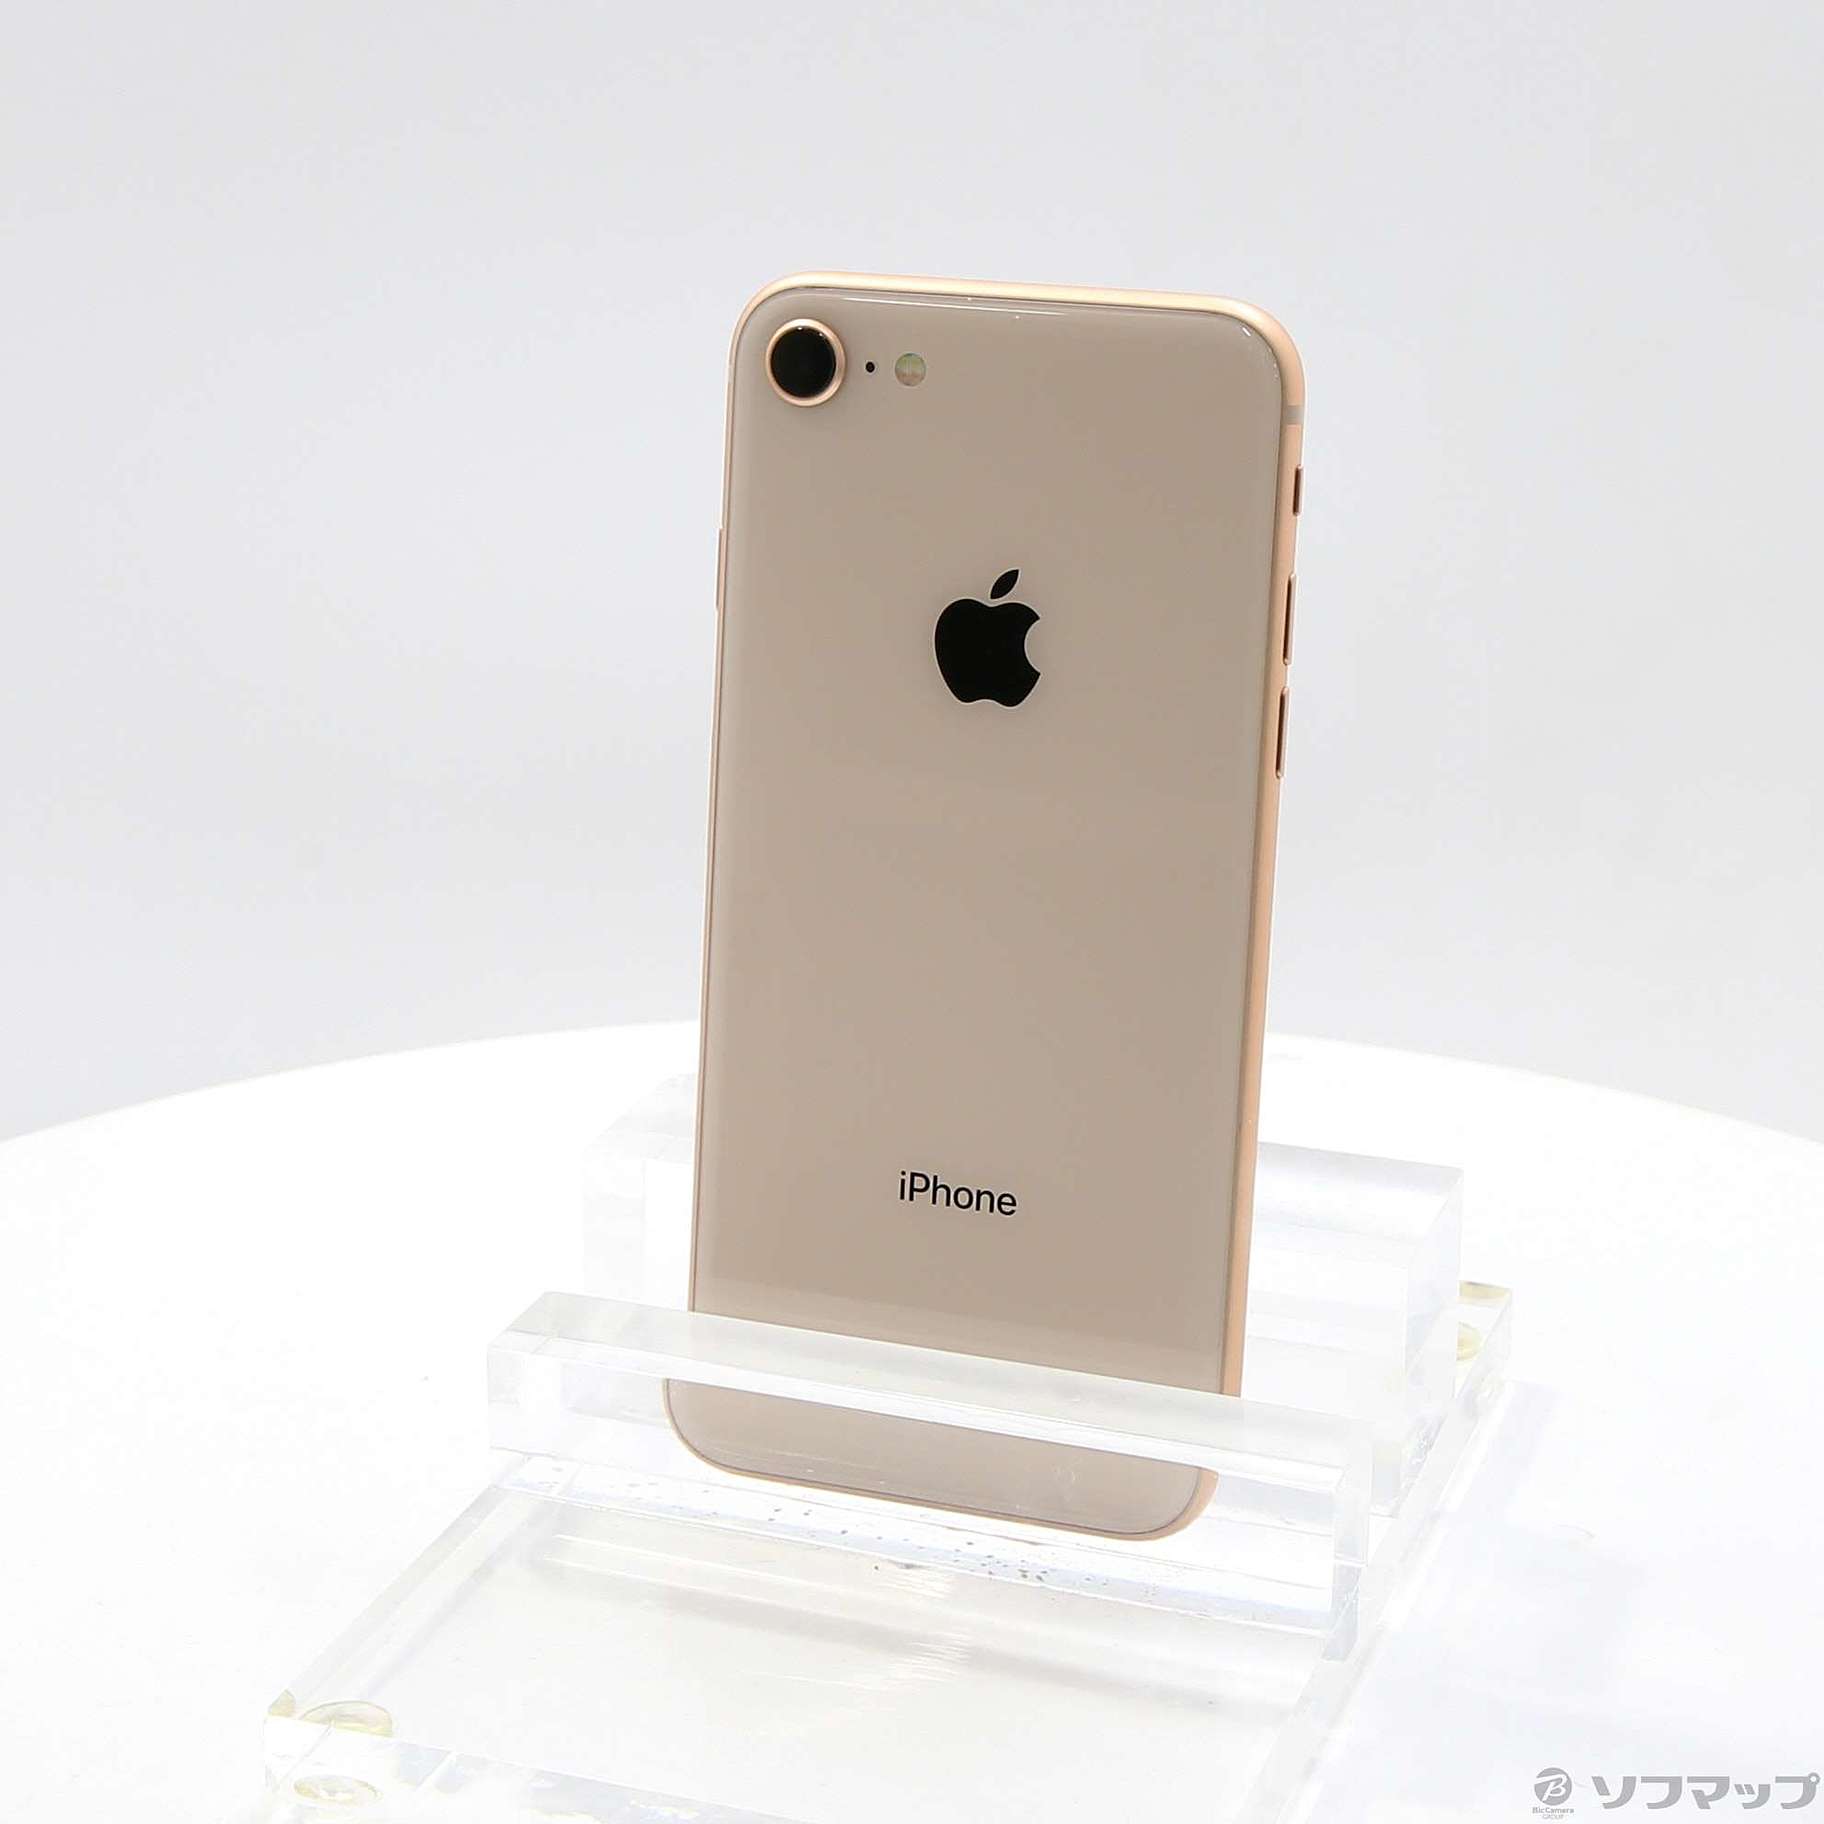 スマートフォン/携帯電話iPhone8 64GB ゴールド - スマートフォン本体